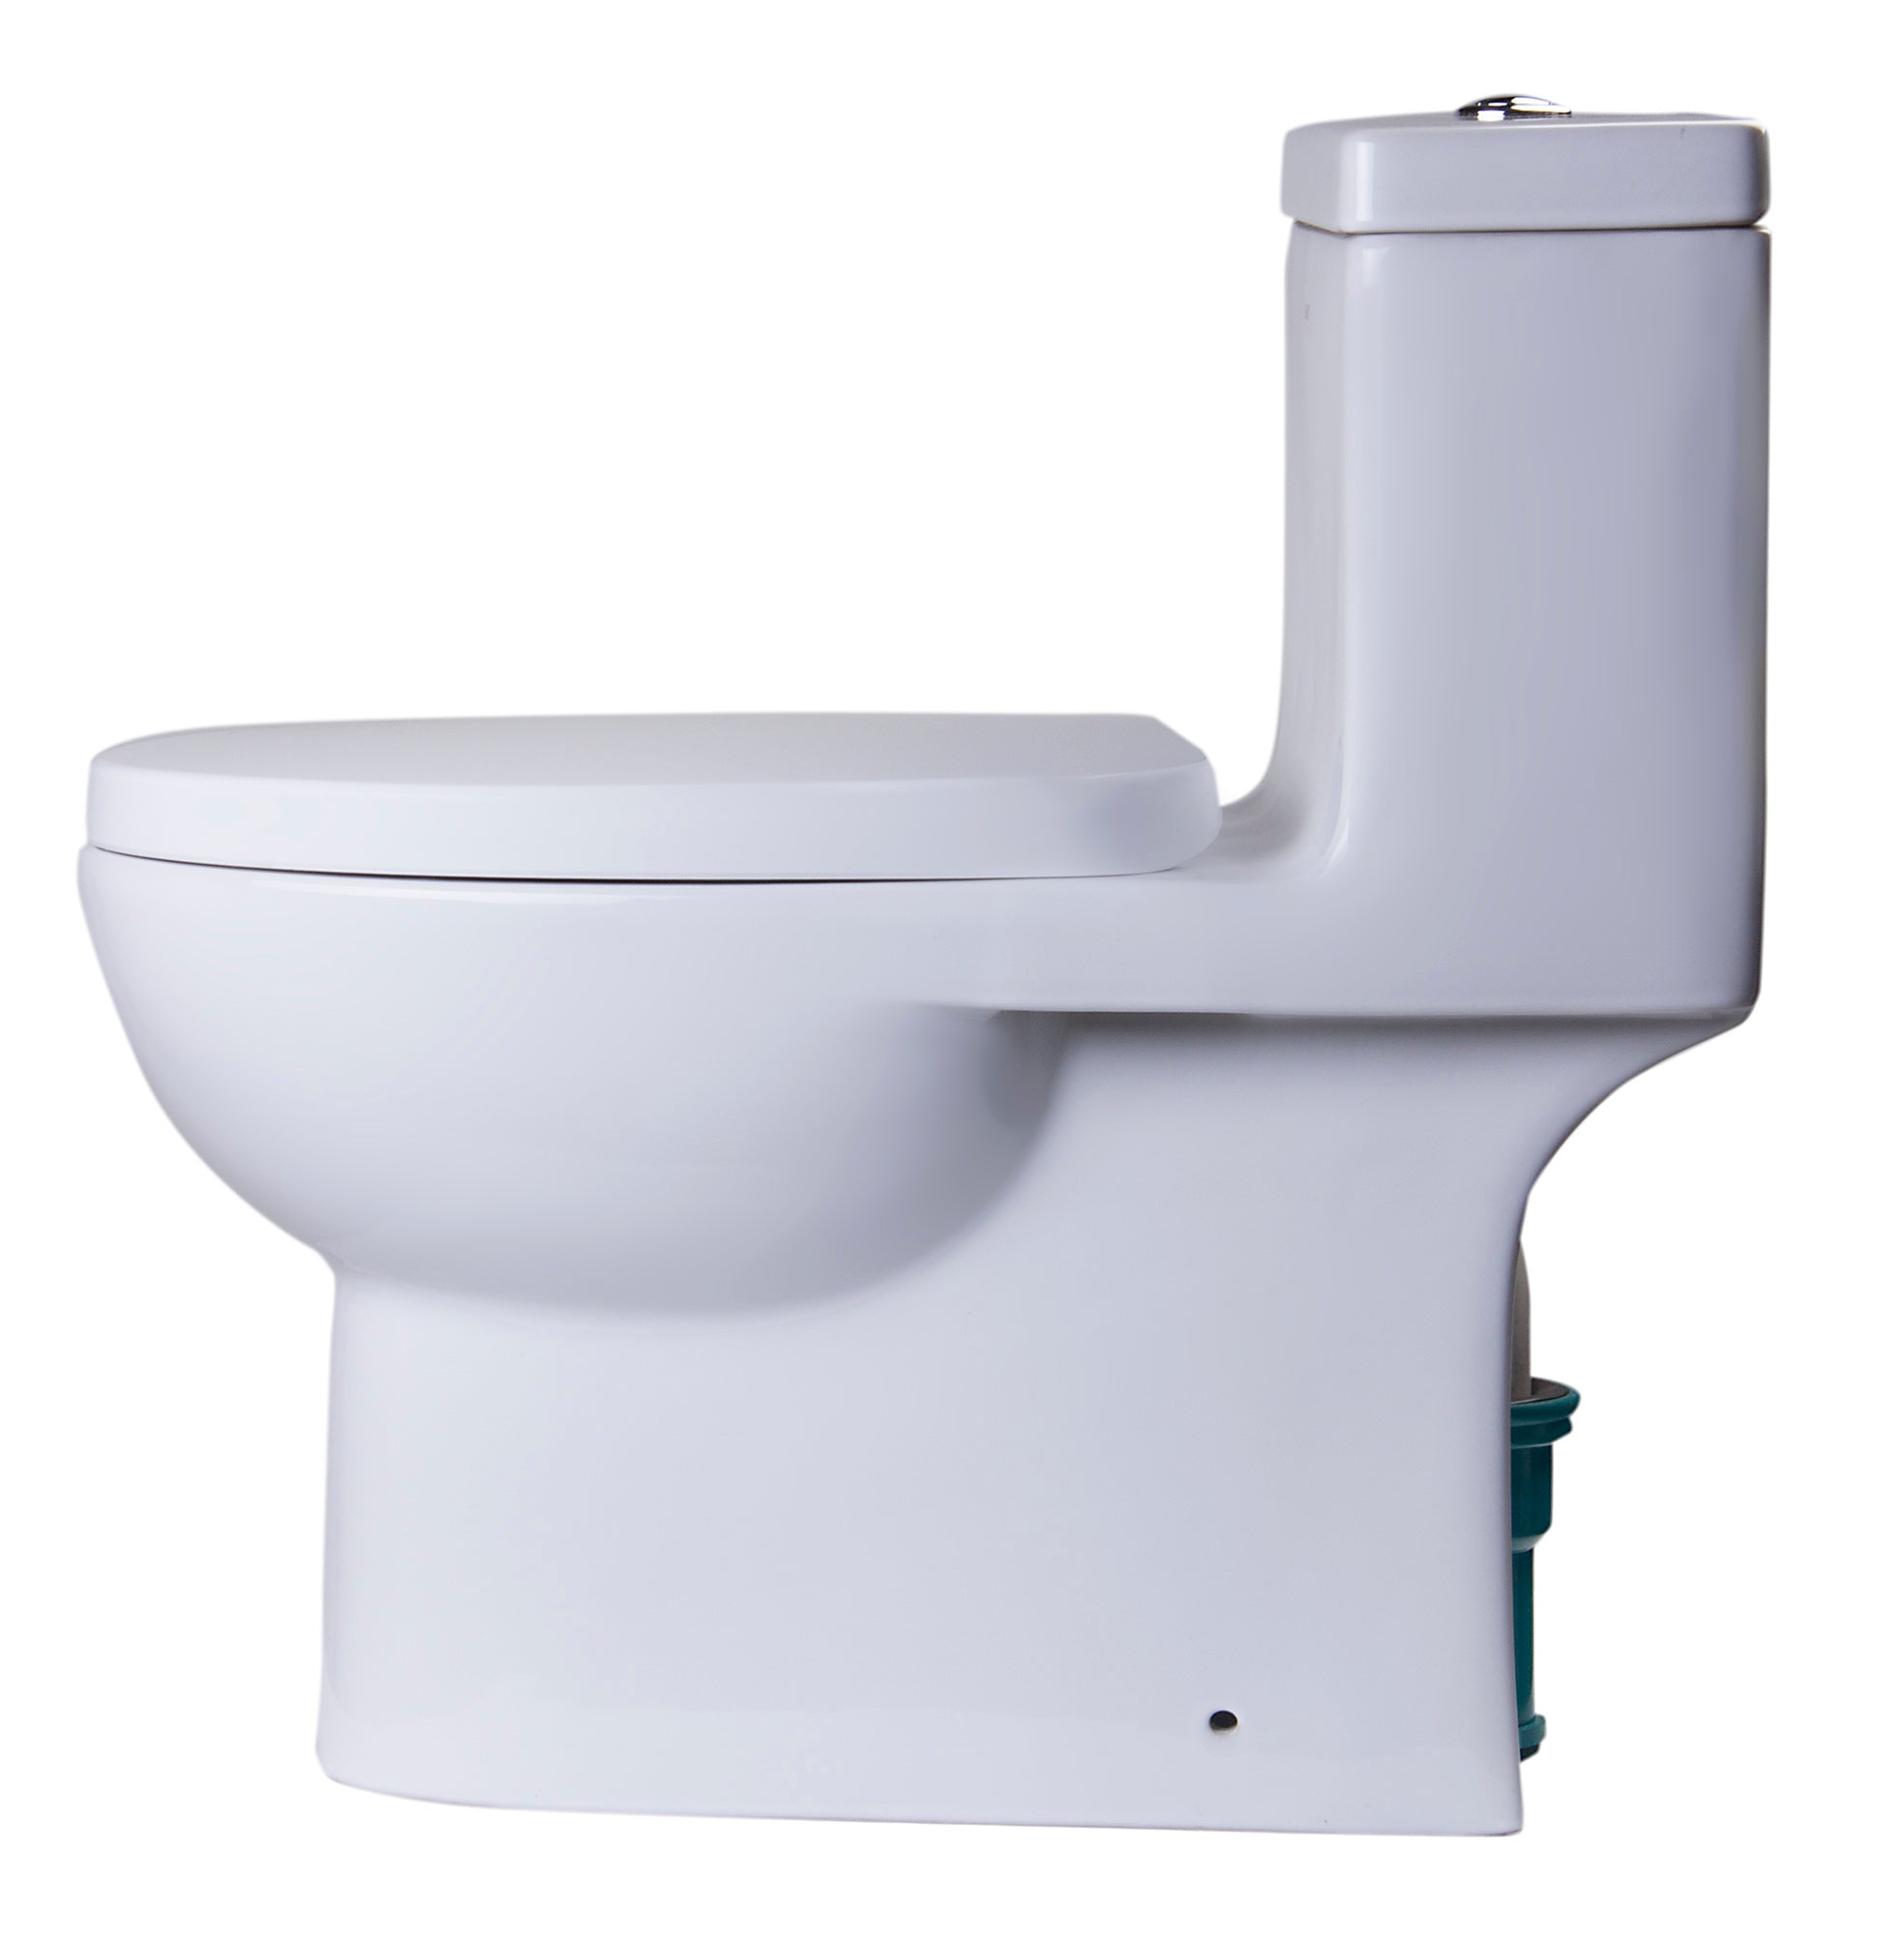 Eago WD332 Round Modern Wall Mount Dual Flush Toilet Bowl